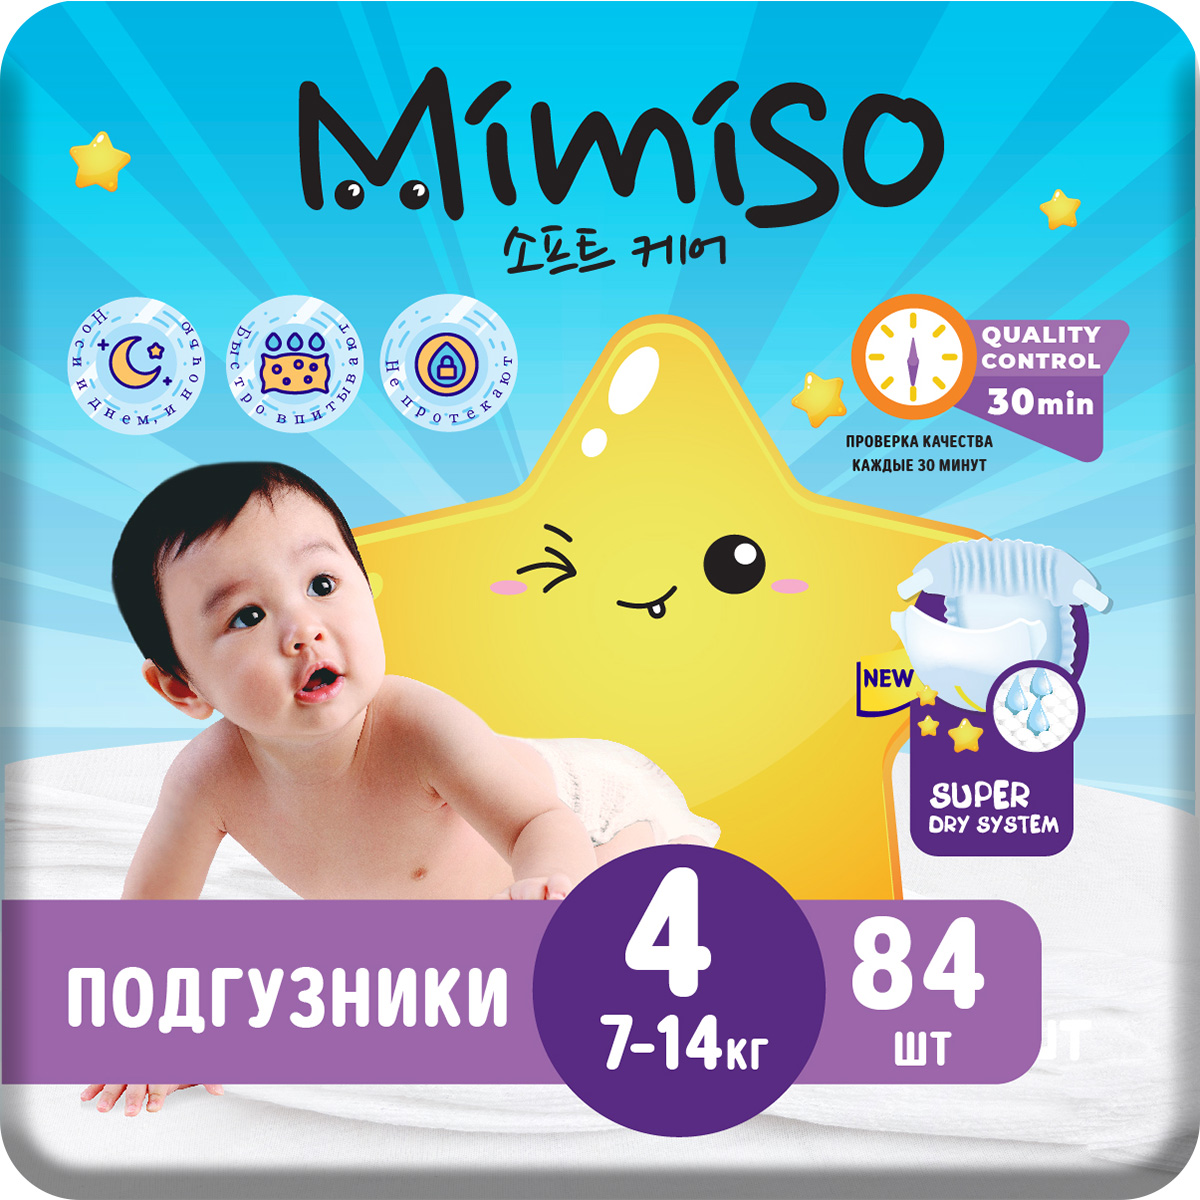 Трусики Mimiso одноразовые для детей 4/L 9-14 кг mega-pack 84шт - фото 1